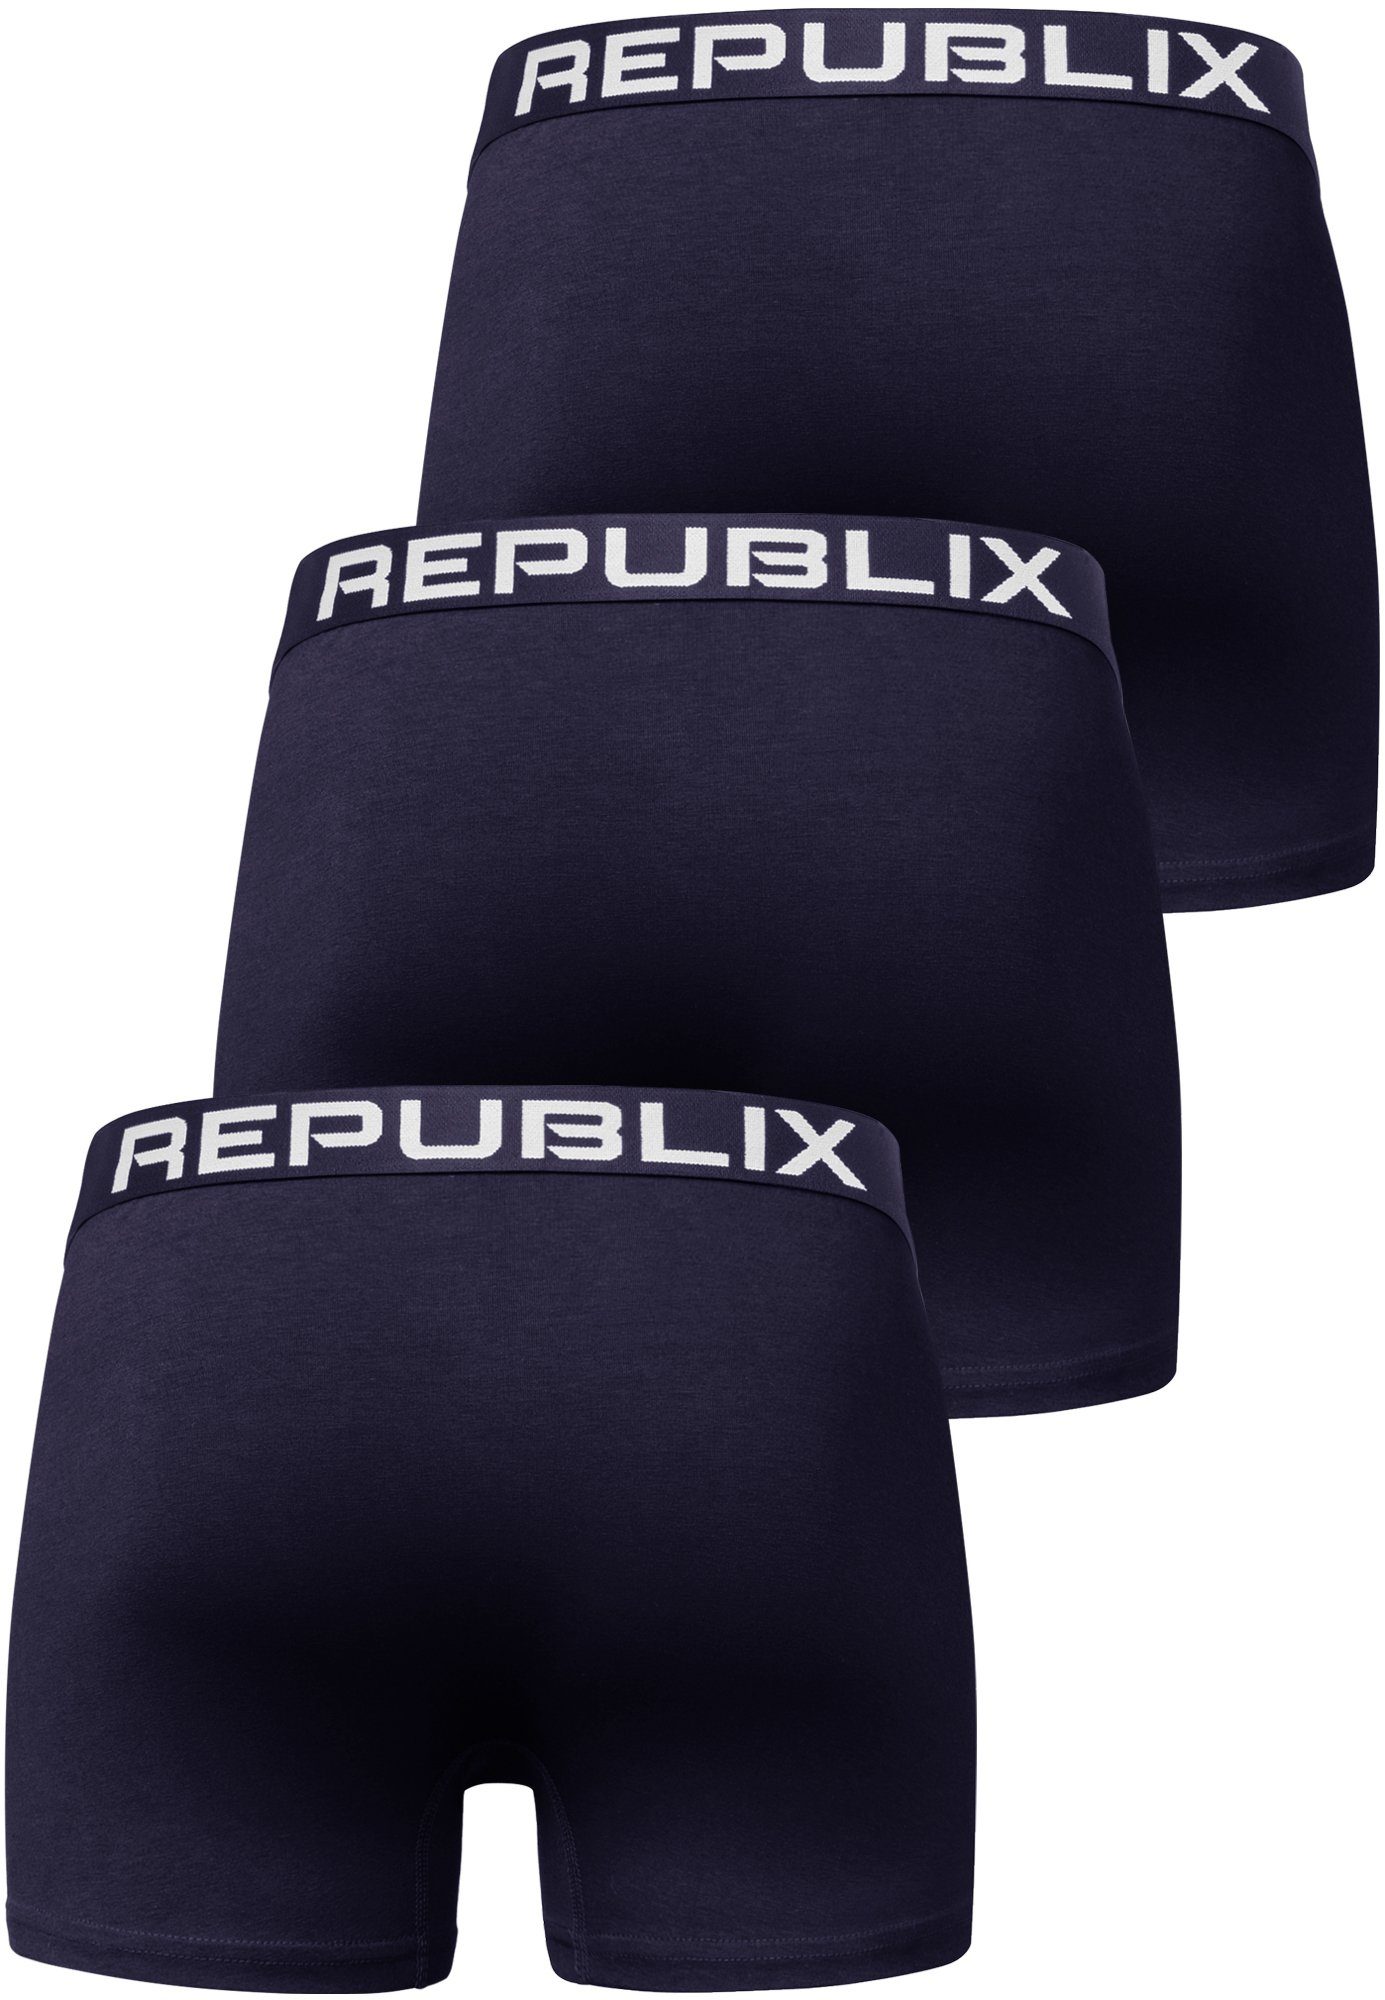 (3er-Pack) Baumwolle REPUBLIX DON Herren Boxershorts Unterwäsche Unterhose Navyblau/Navyblau Männer